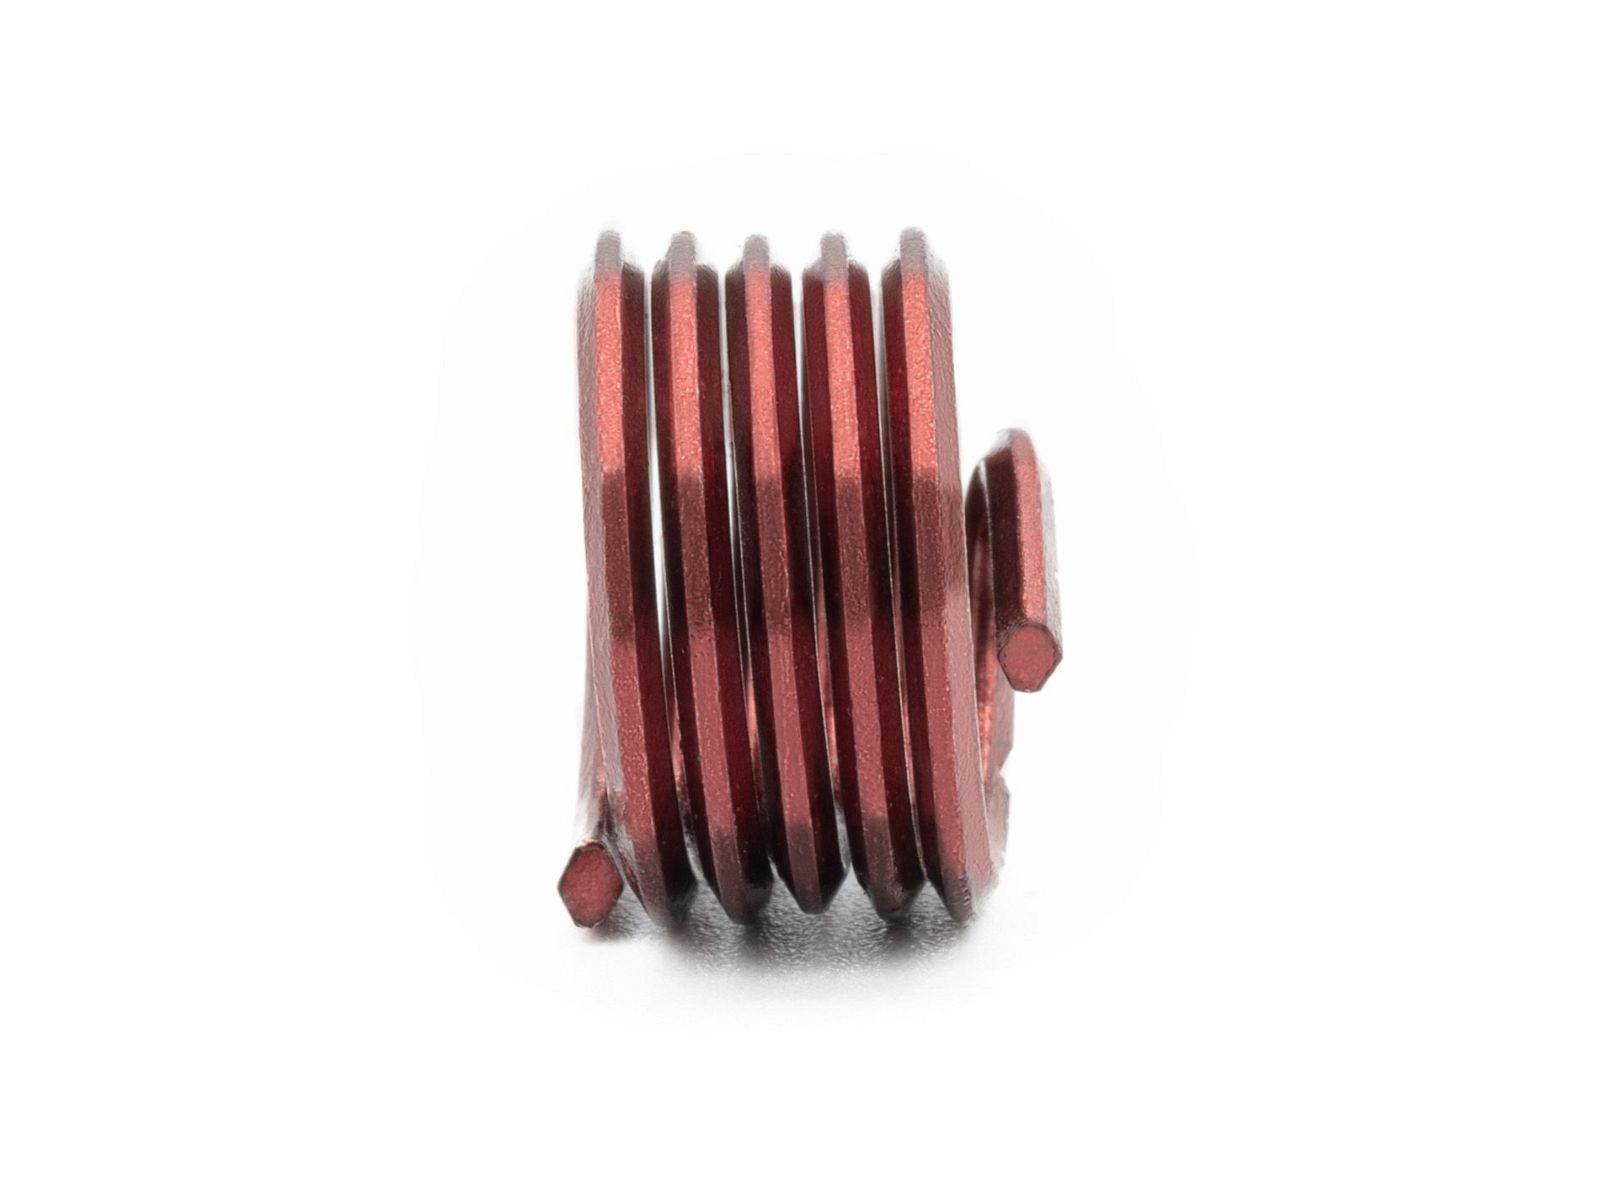 BaerCoil Wire Thread Inserts UNF 5/16 x 24 - 1.0 D (7.94 mm) - screw grip (screw locking) - 100 pcs.